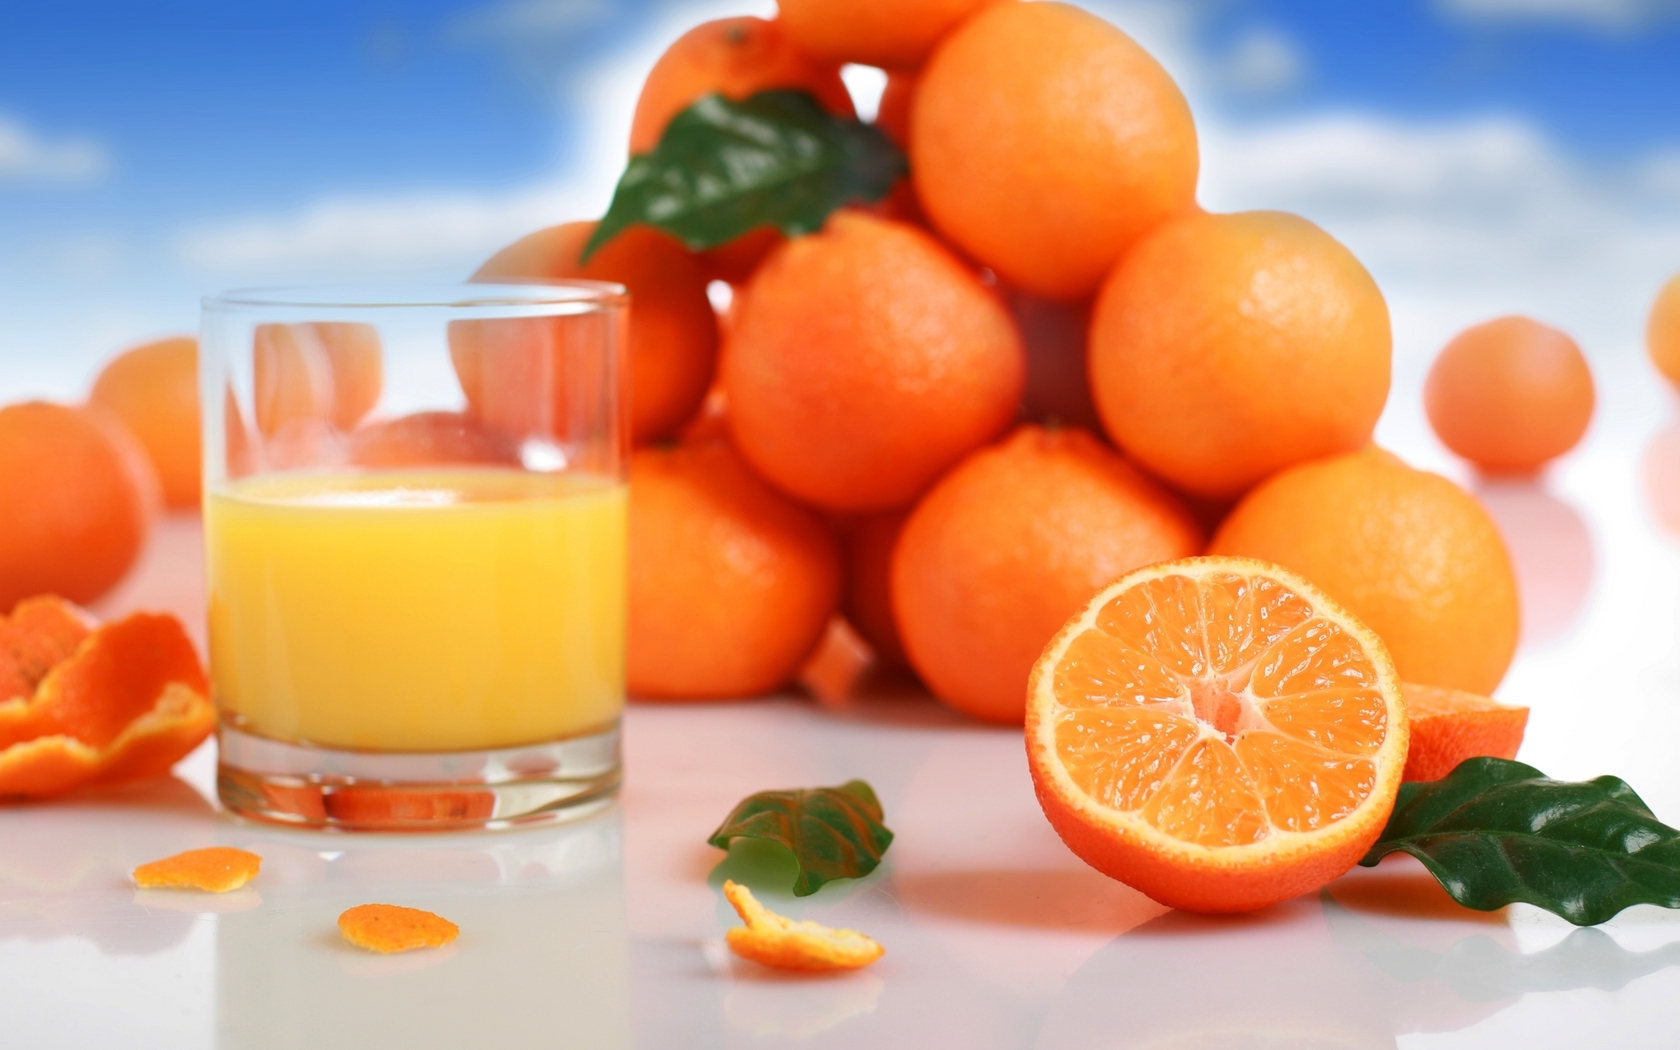 сок, апельсиновый, фрукты, апельсины, цитрусы HD фото картинки, обои рабочий стол